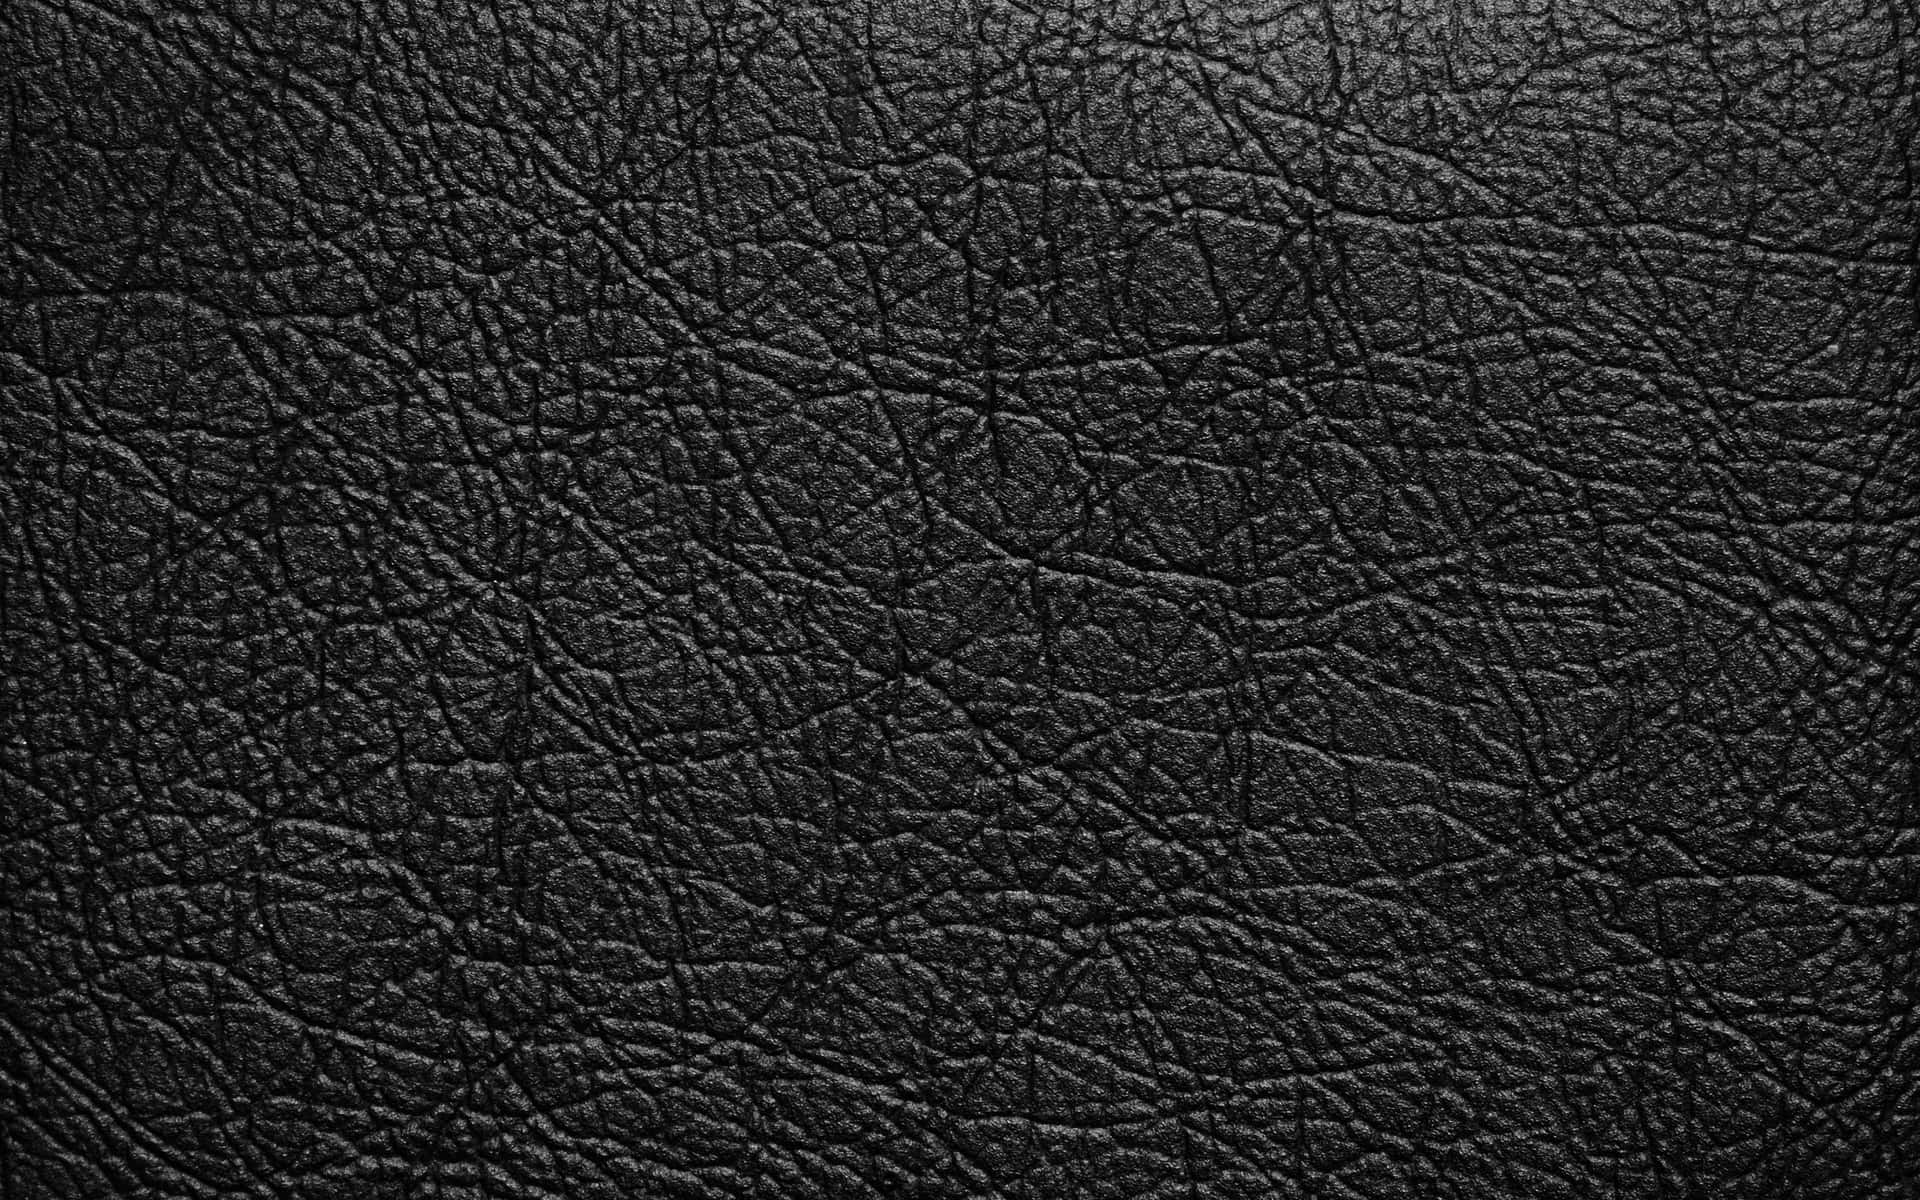 Image  Stylish and Elegant Black Leather